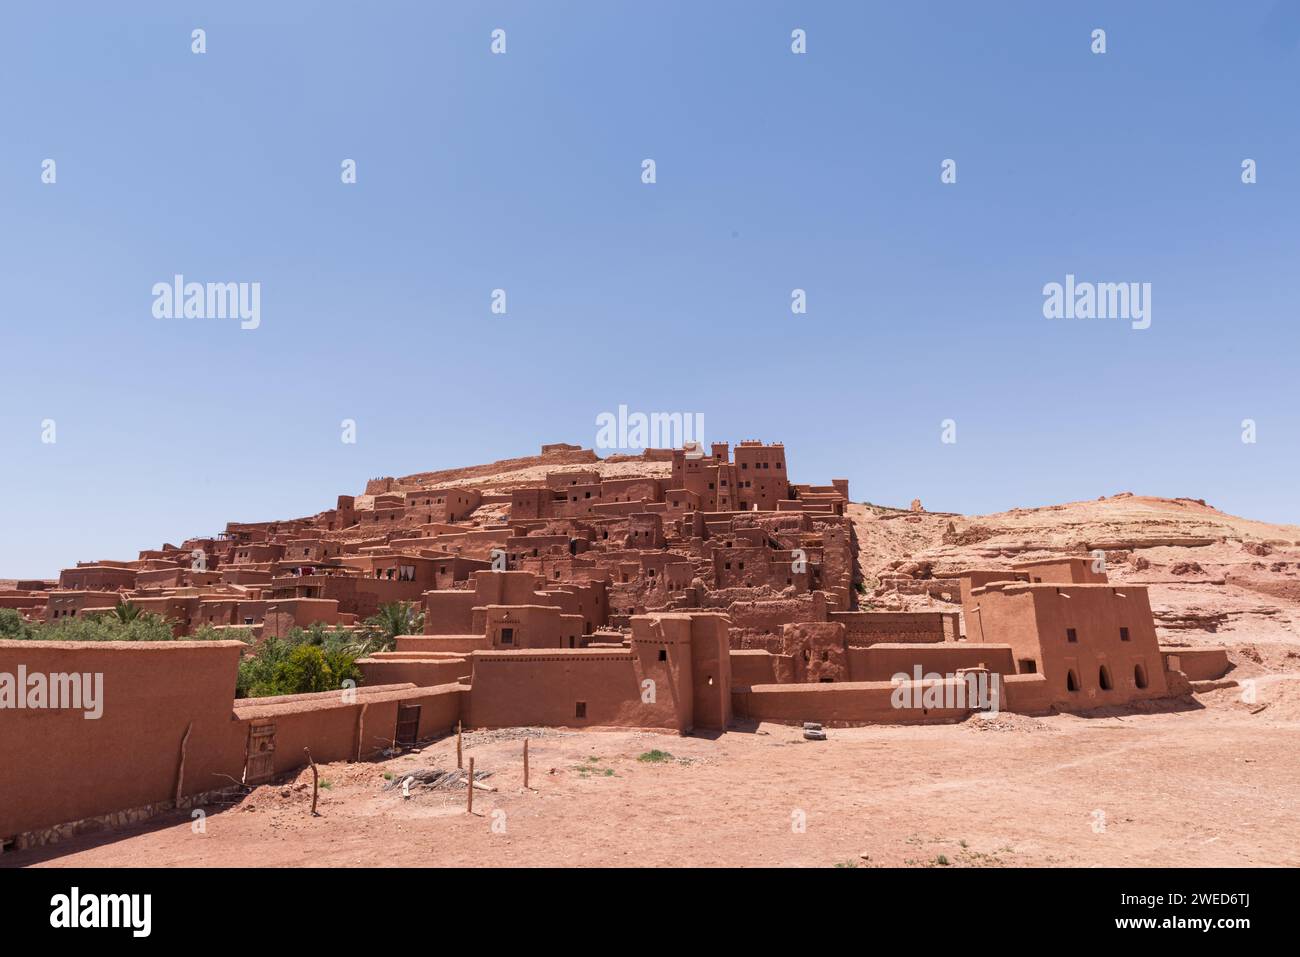 Kasbah Ait Ben Haddou vicino a Ouarzazate, Marocco: Un sito patrimonio dell'umanità dell'UNESCO e una cittadella desertica, che conserva il fascino storico dell'architettura berbera Foto Stock